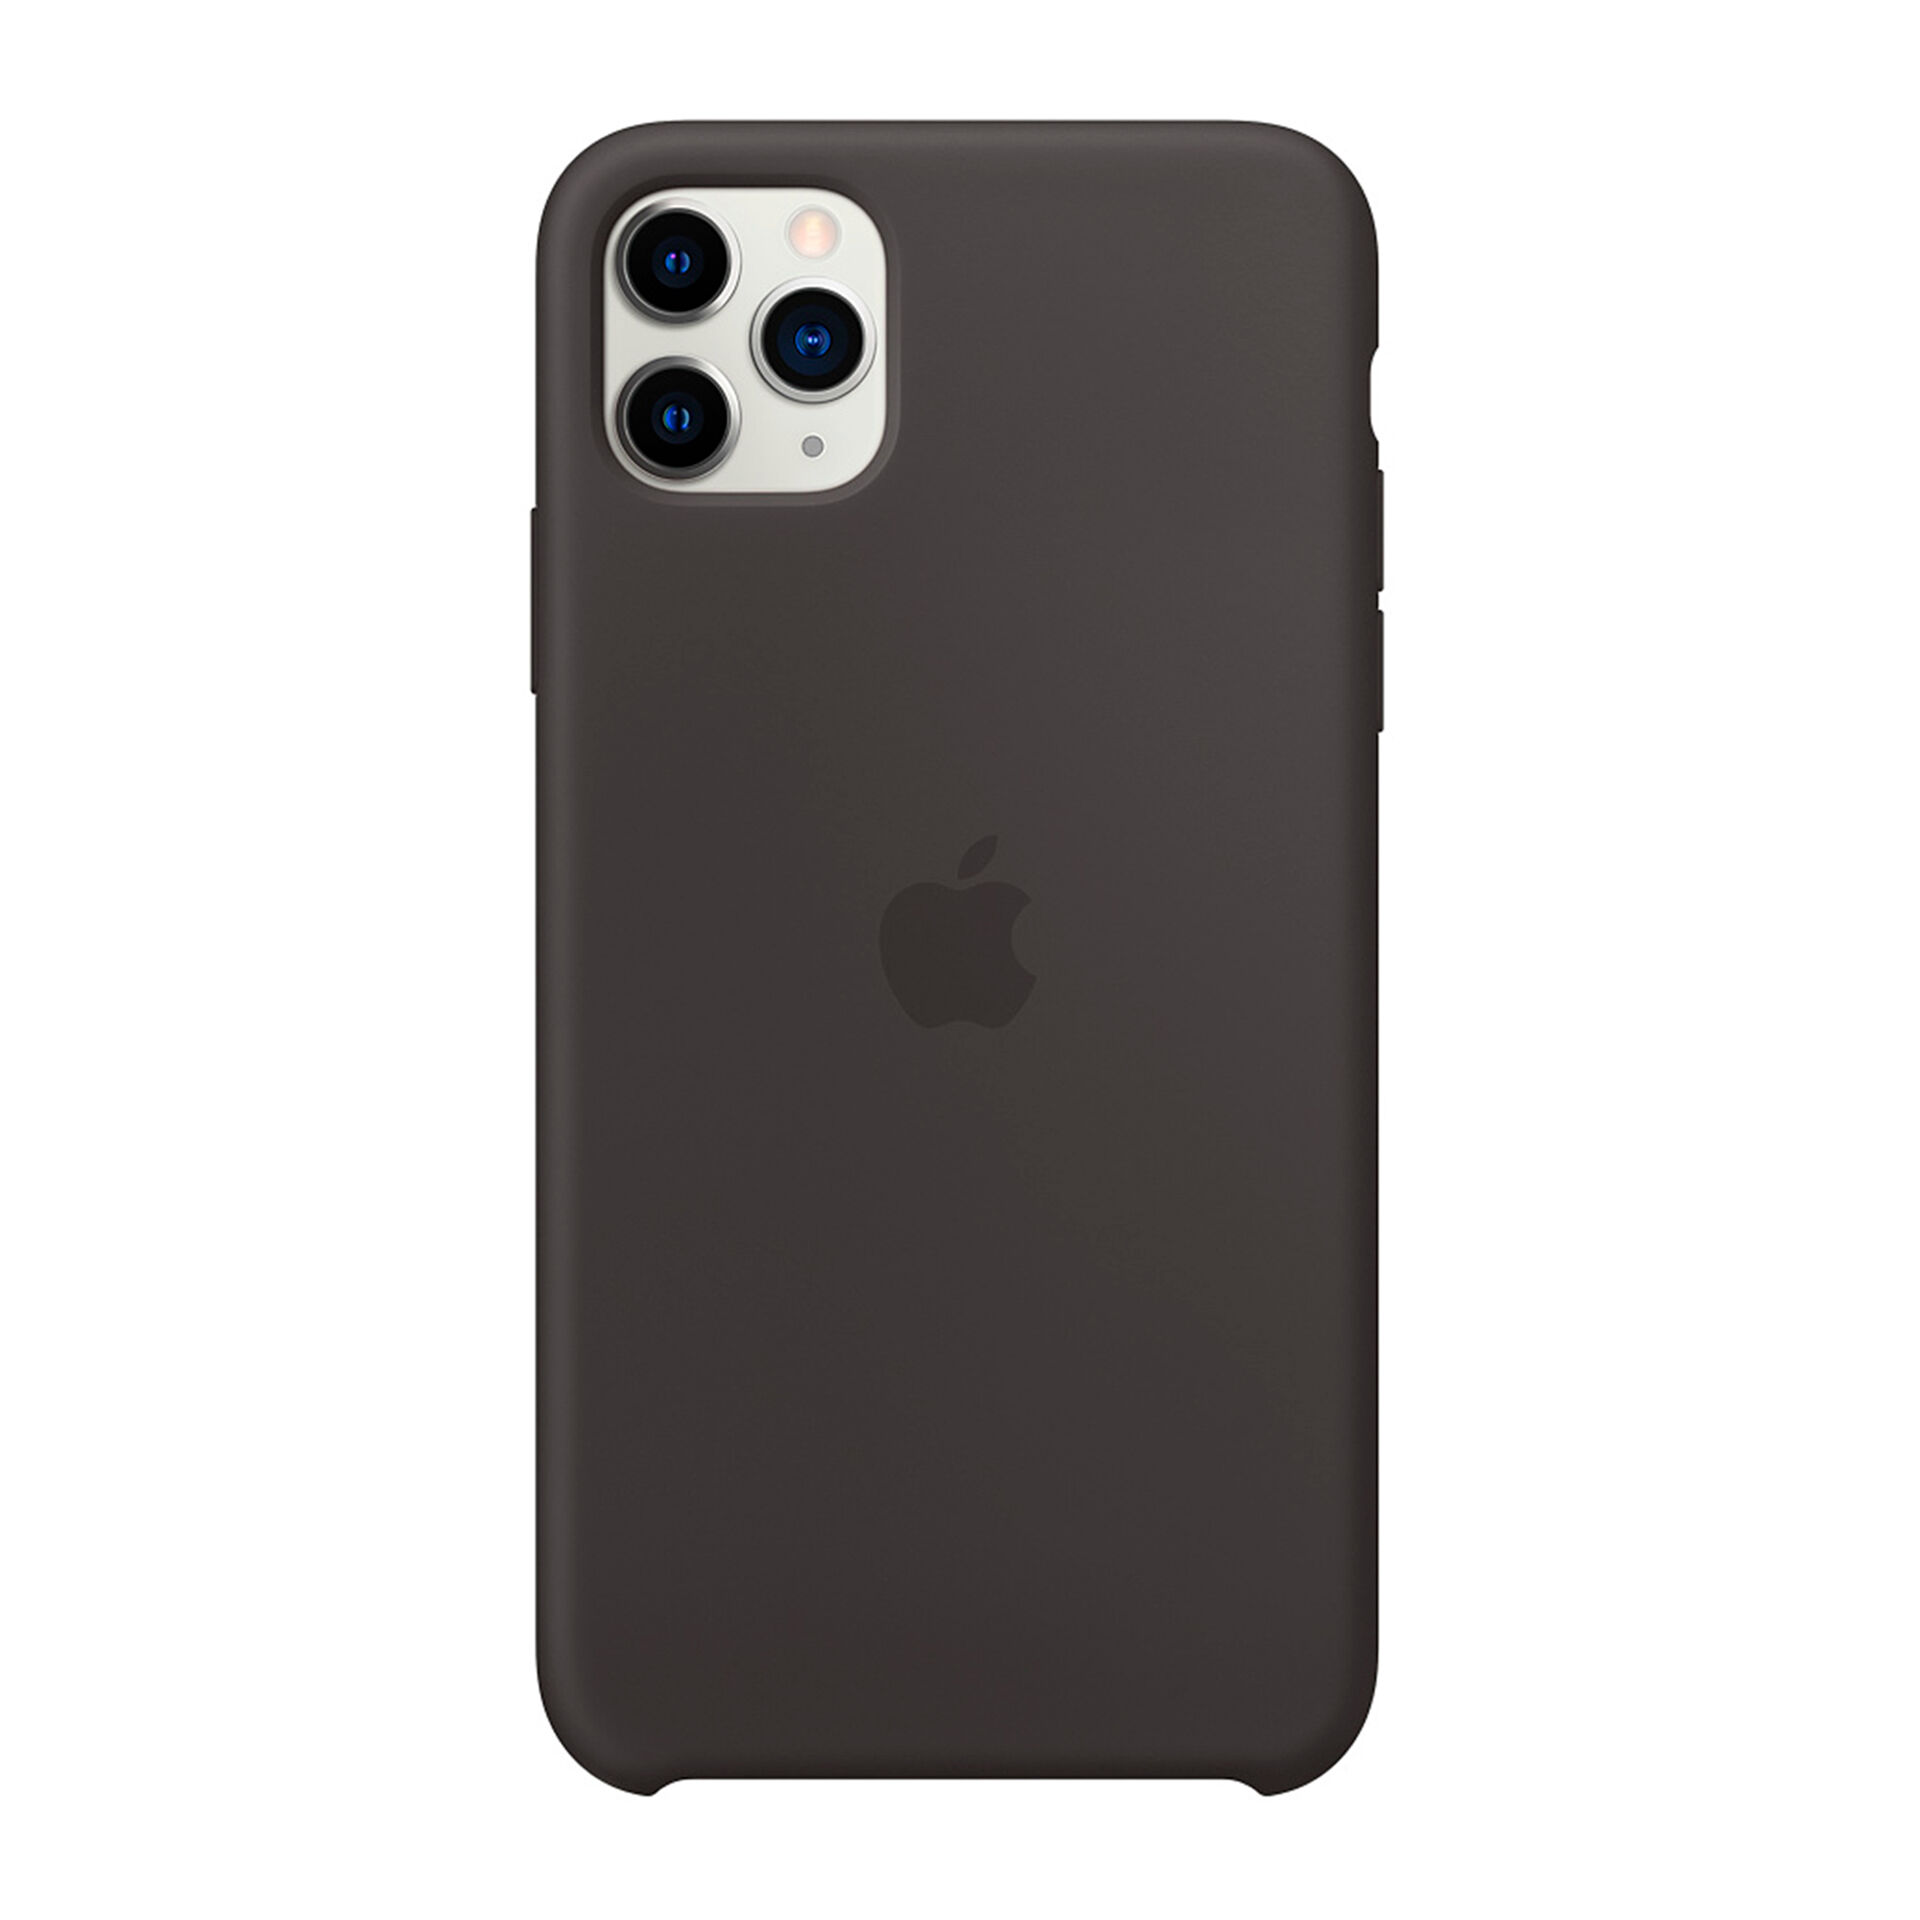 Apple Capa silicone Preto iPhone 11 Pro Max